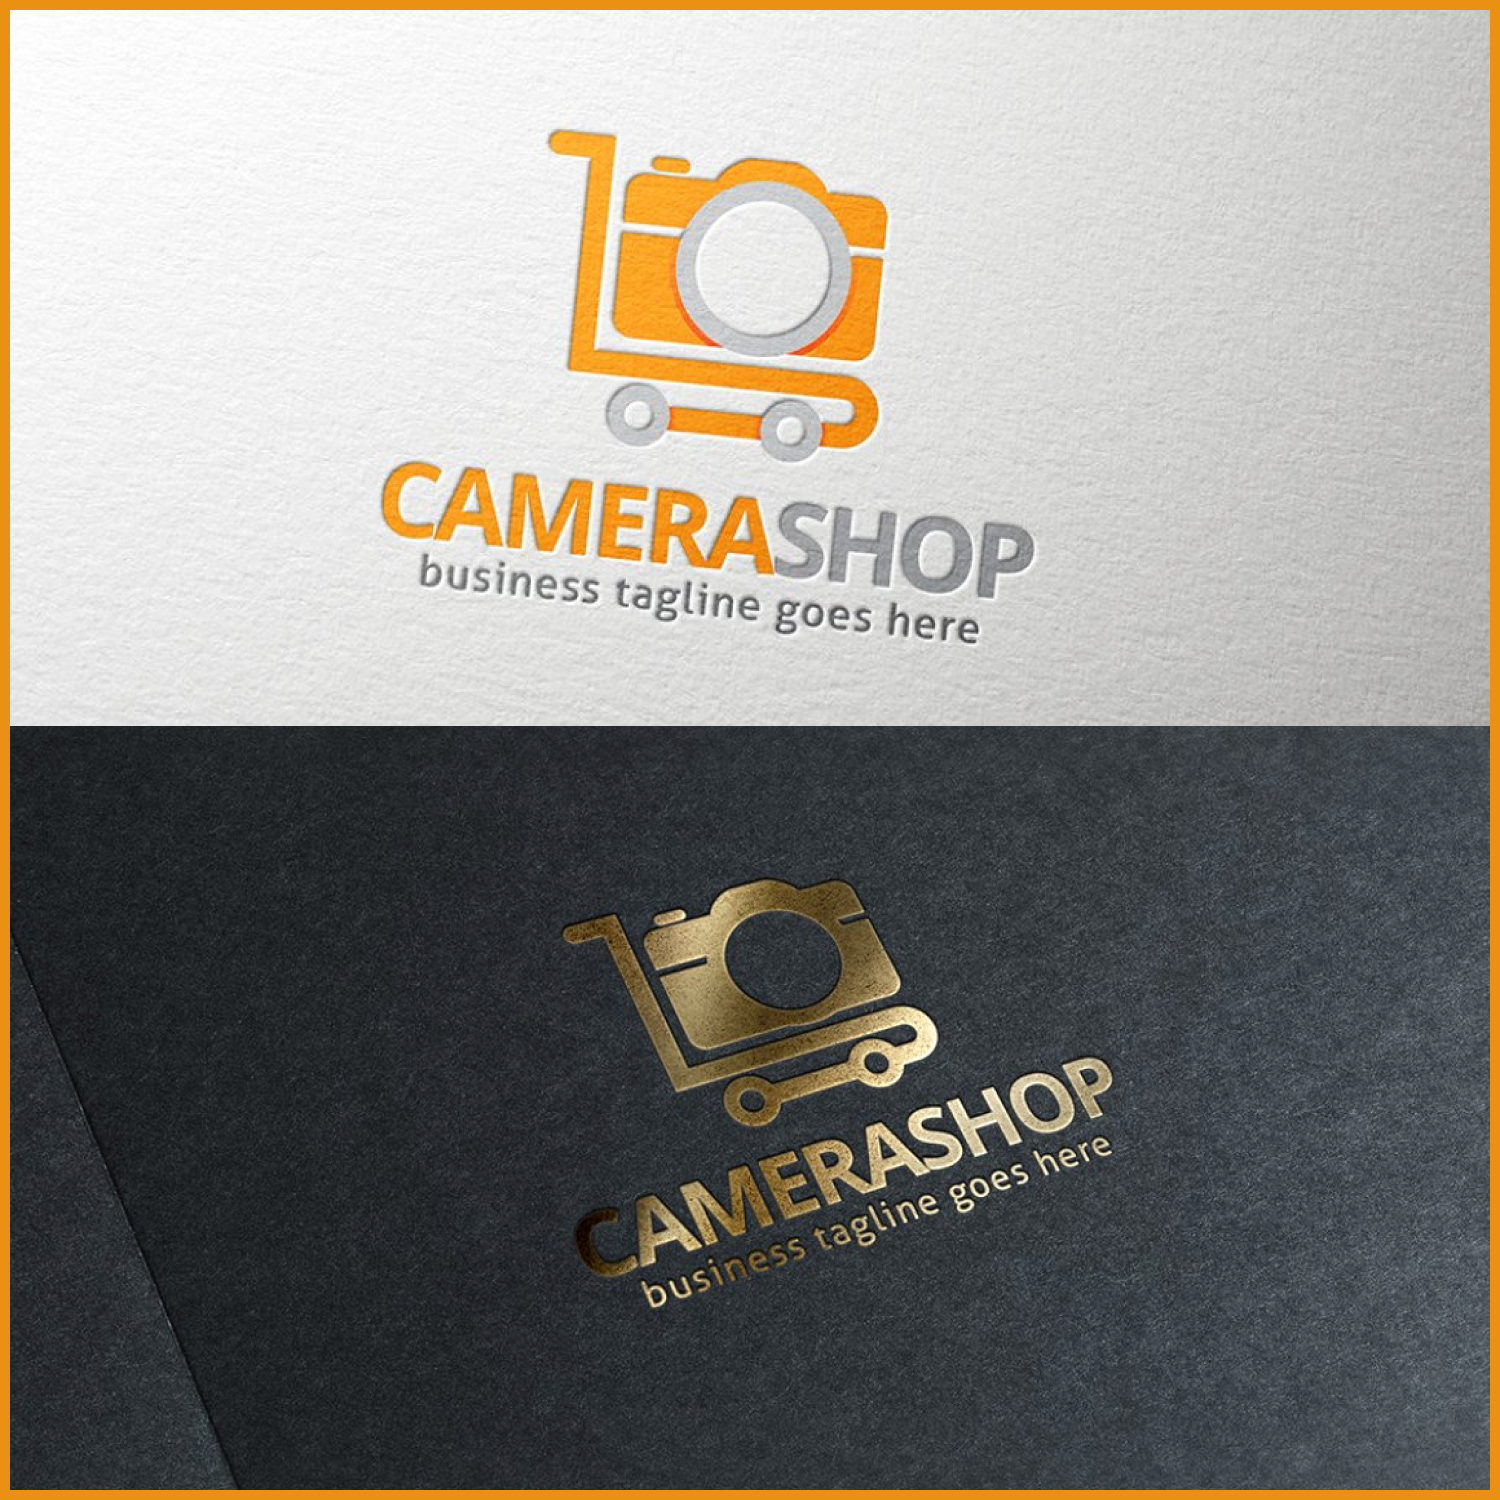 Prints of camera shop logo.